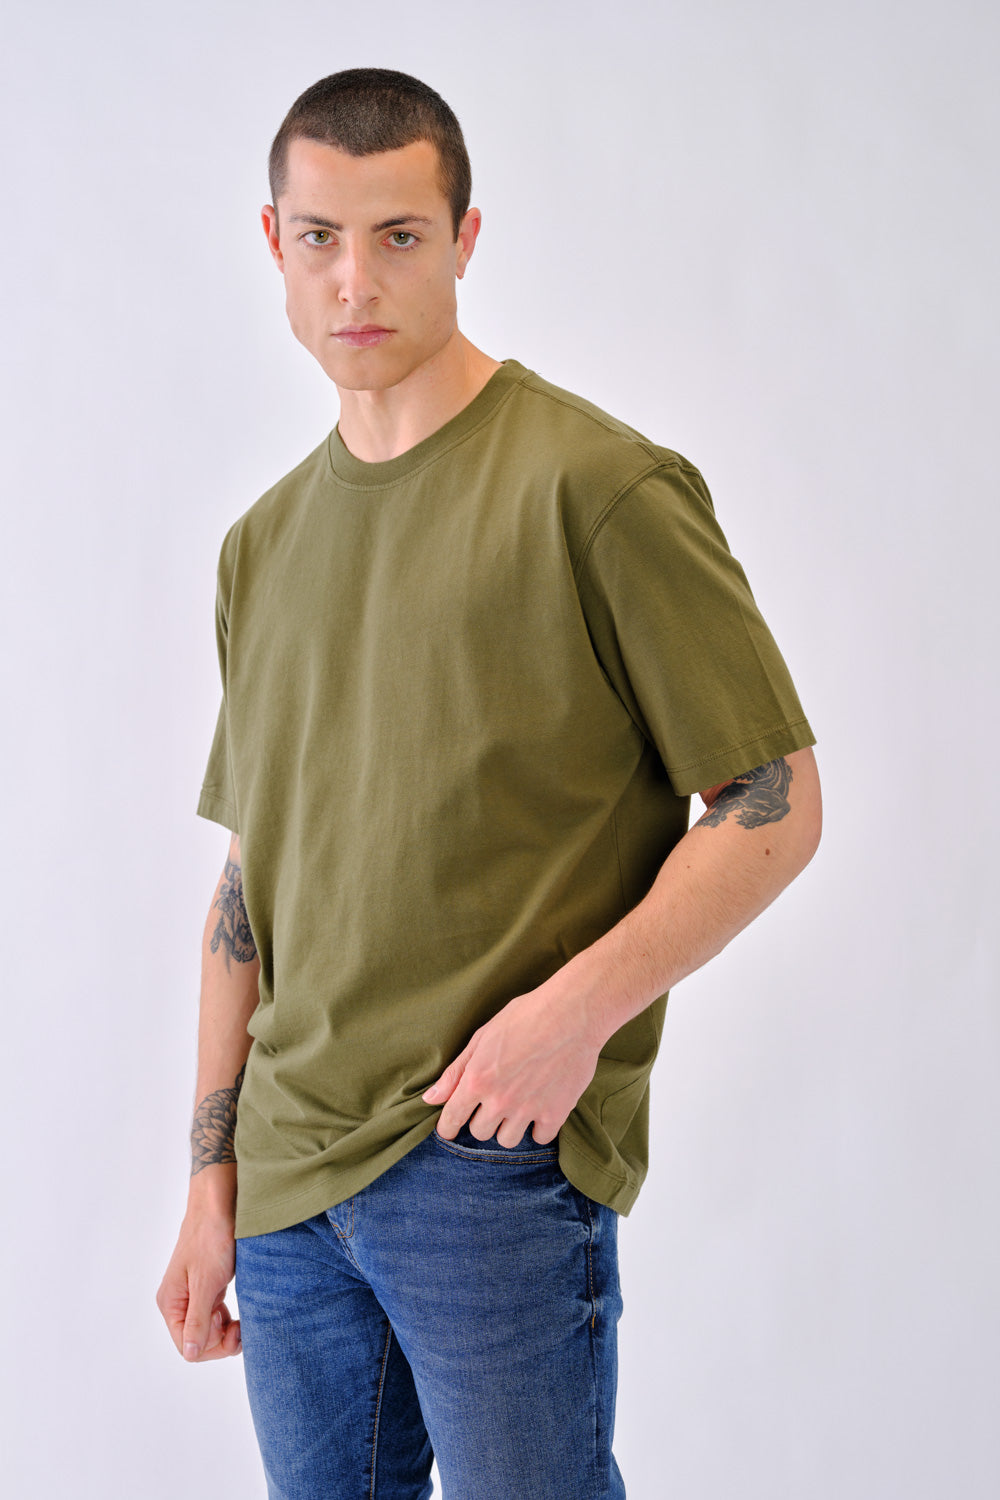 190/300 - T-shirt Homem